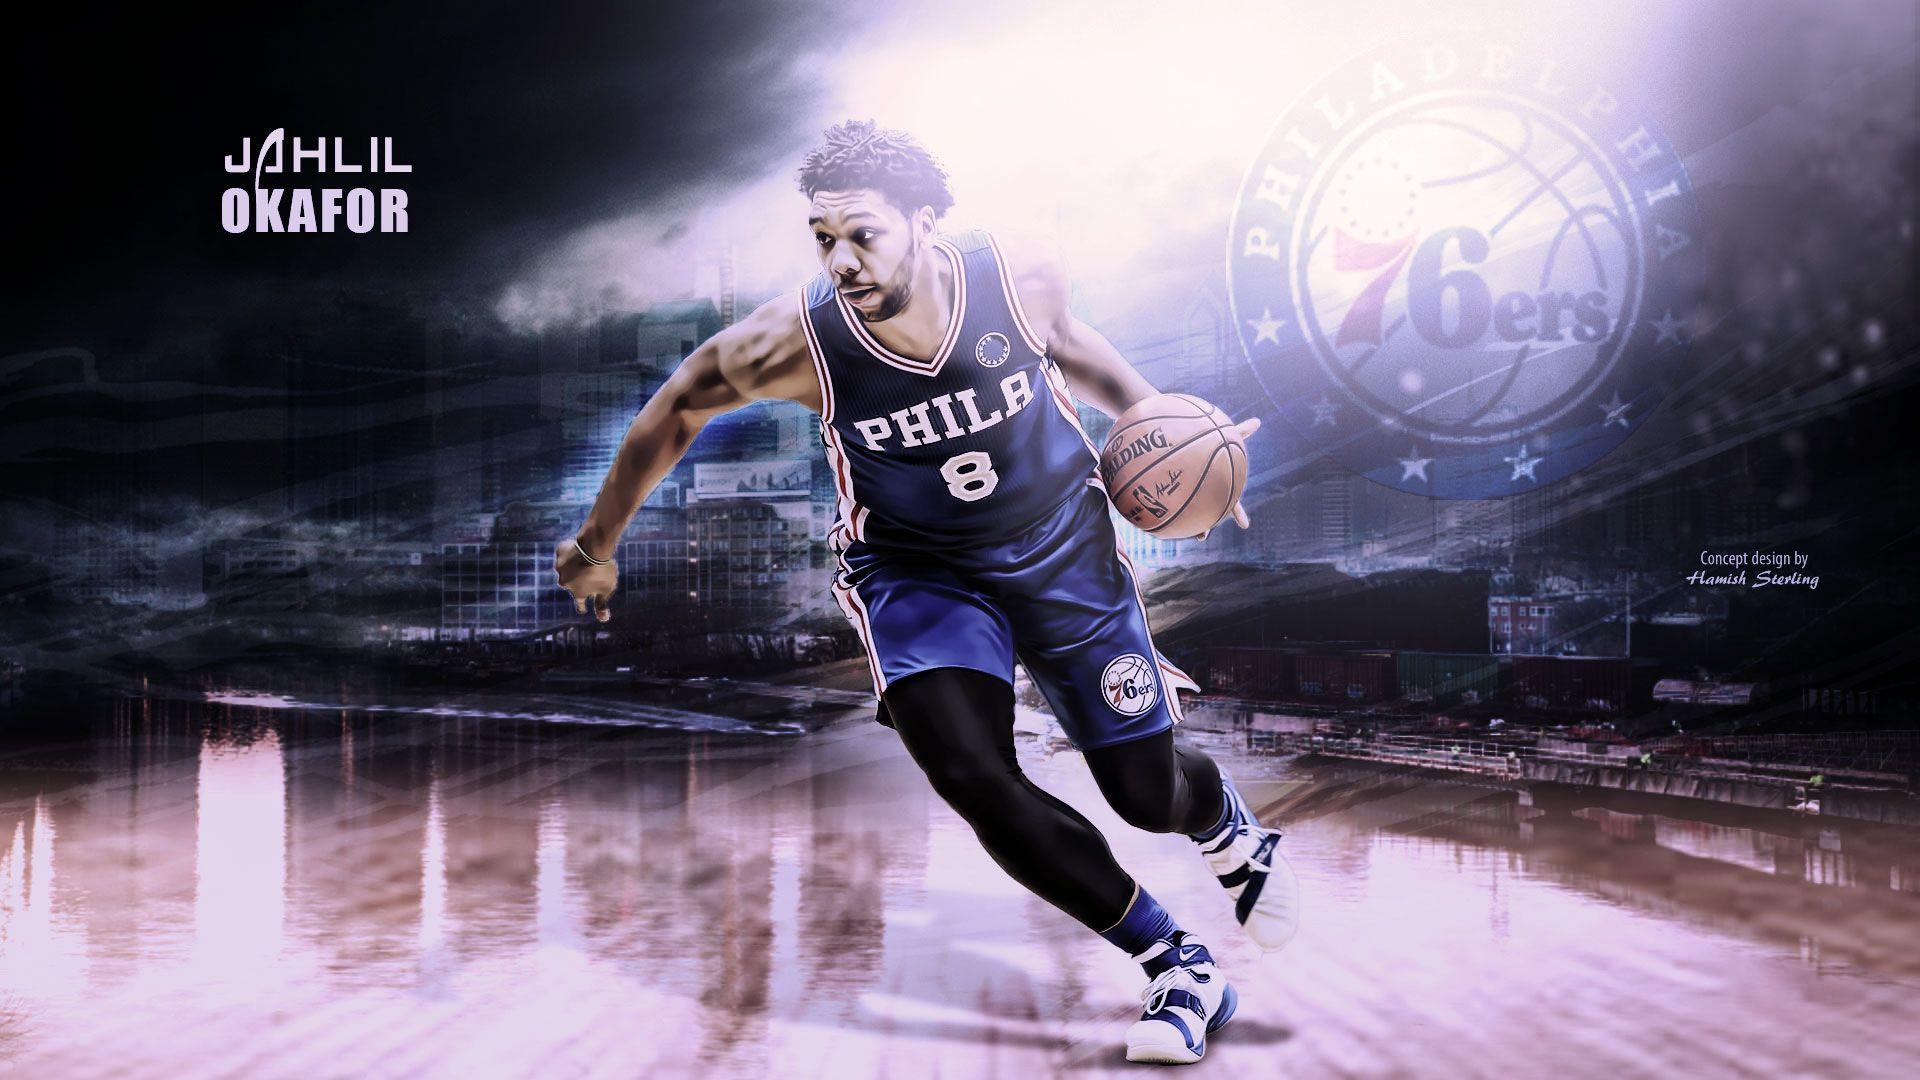 Jahlil Okafor Philadelphia 76ers 2016 Wallpaper. Basketball